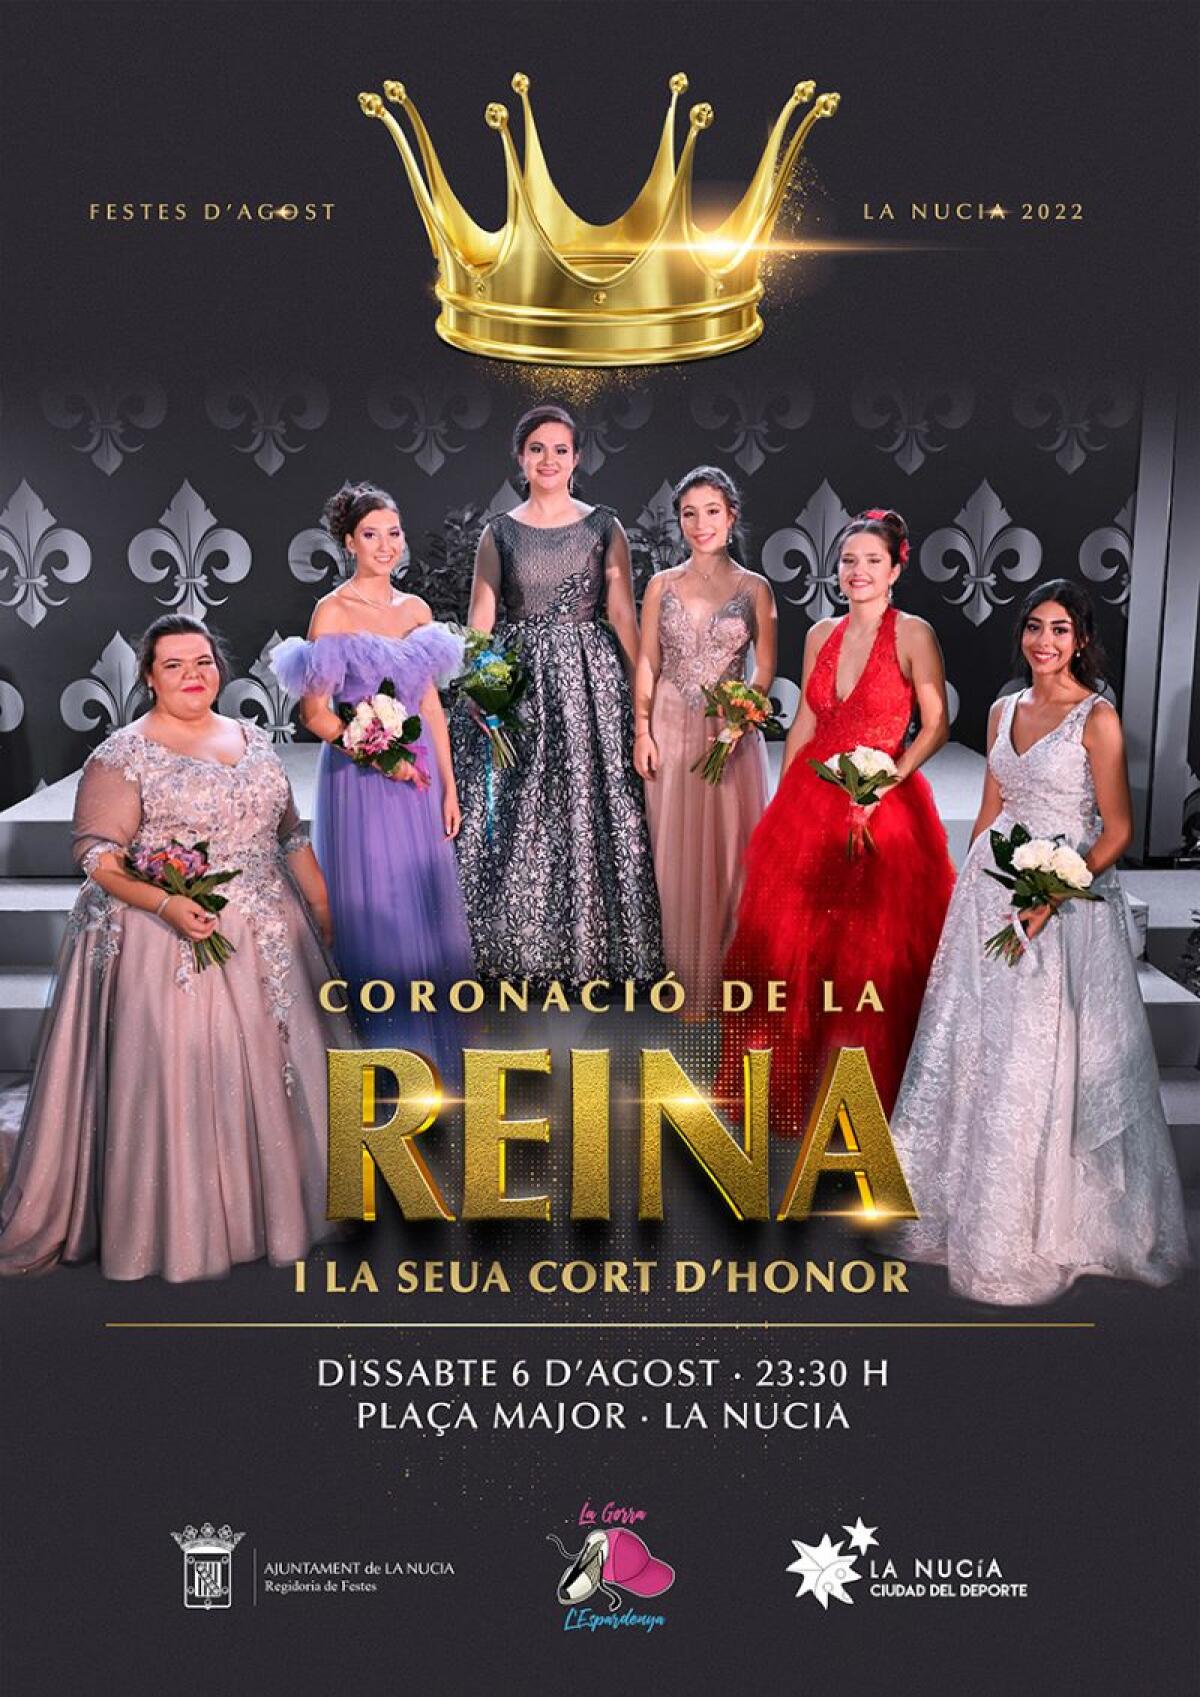 Teresa Mercado será coronada como reina de “les Festes d’Agost” este sábado 